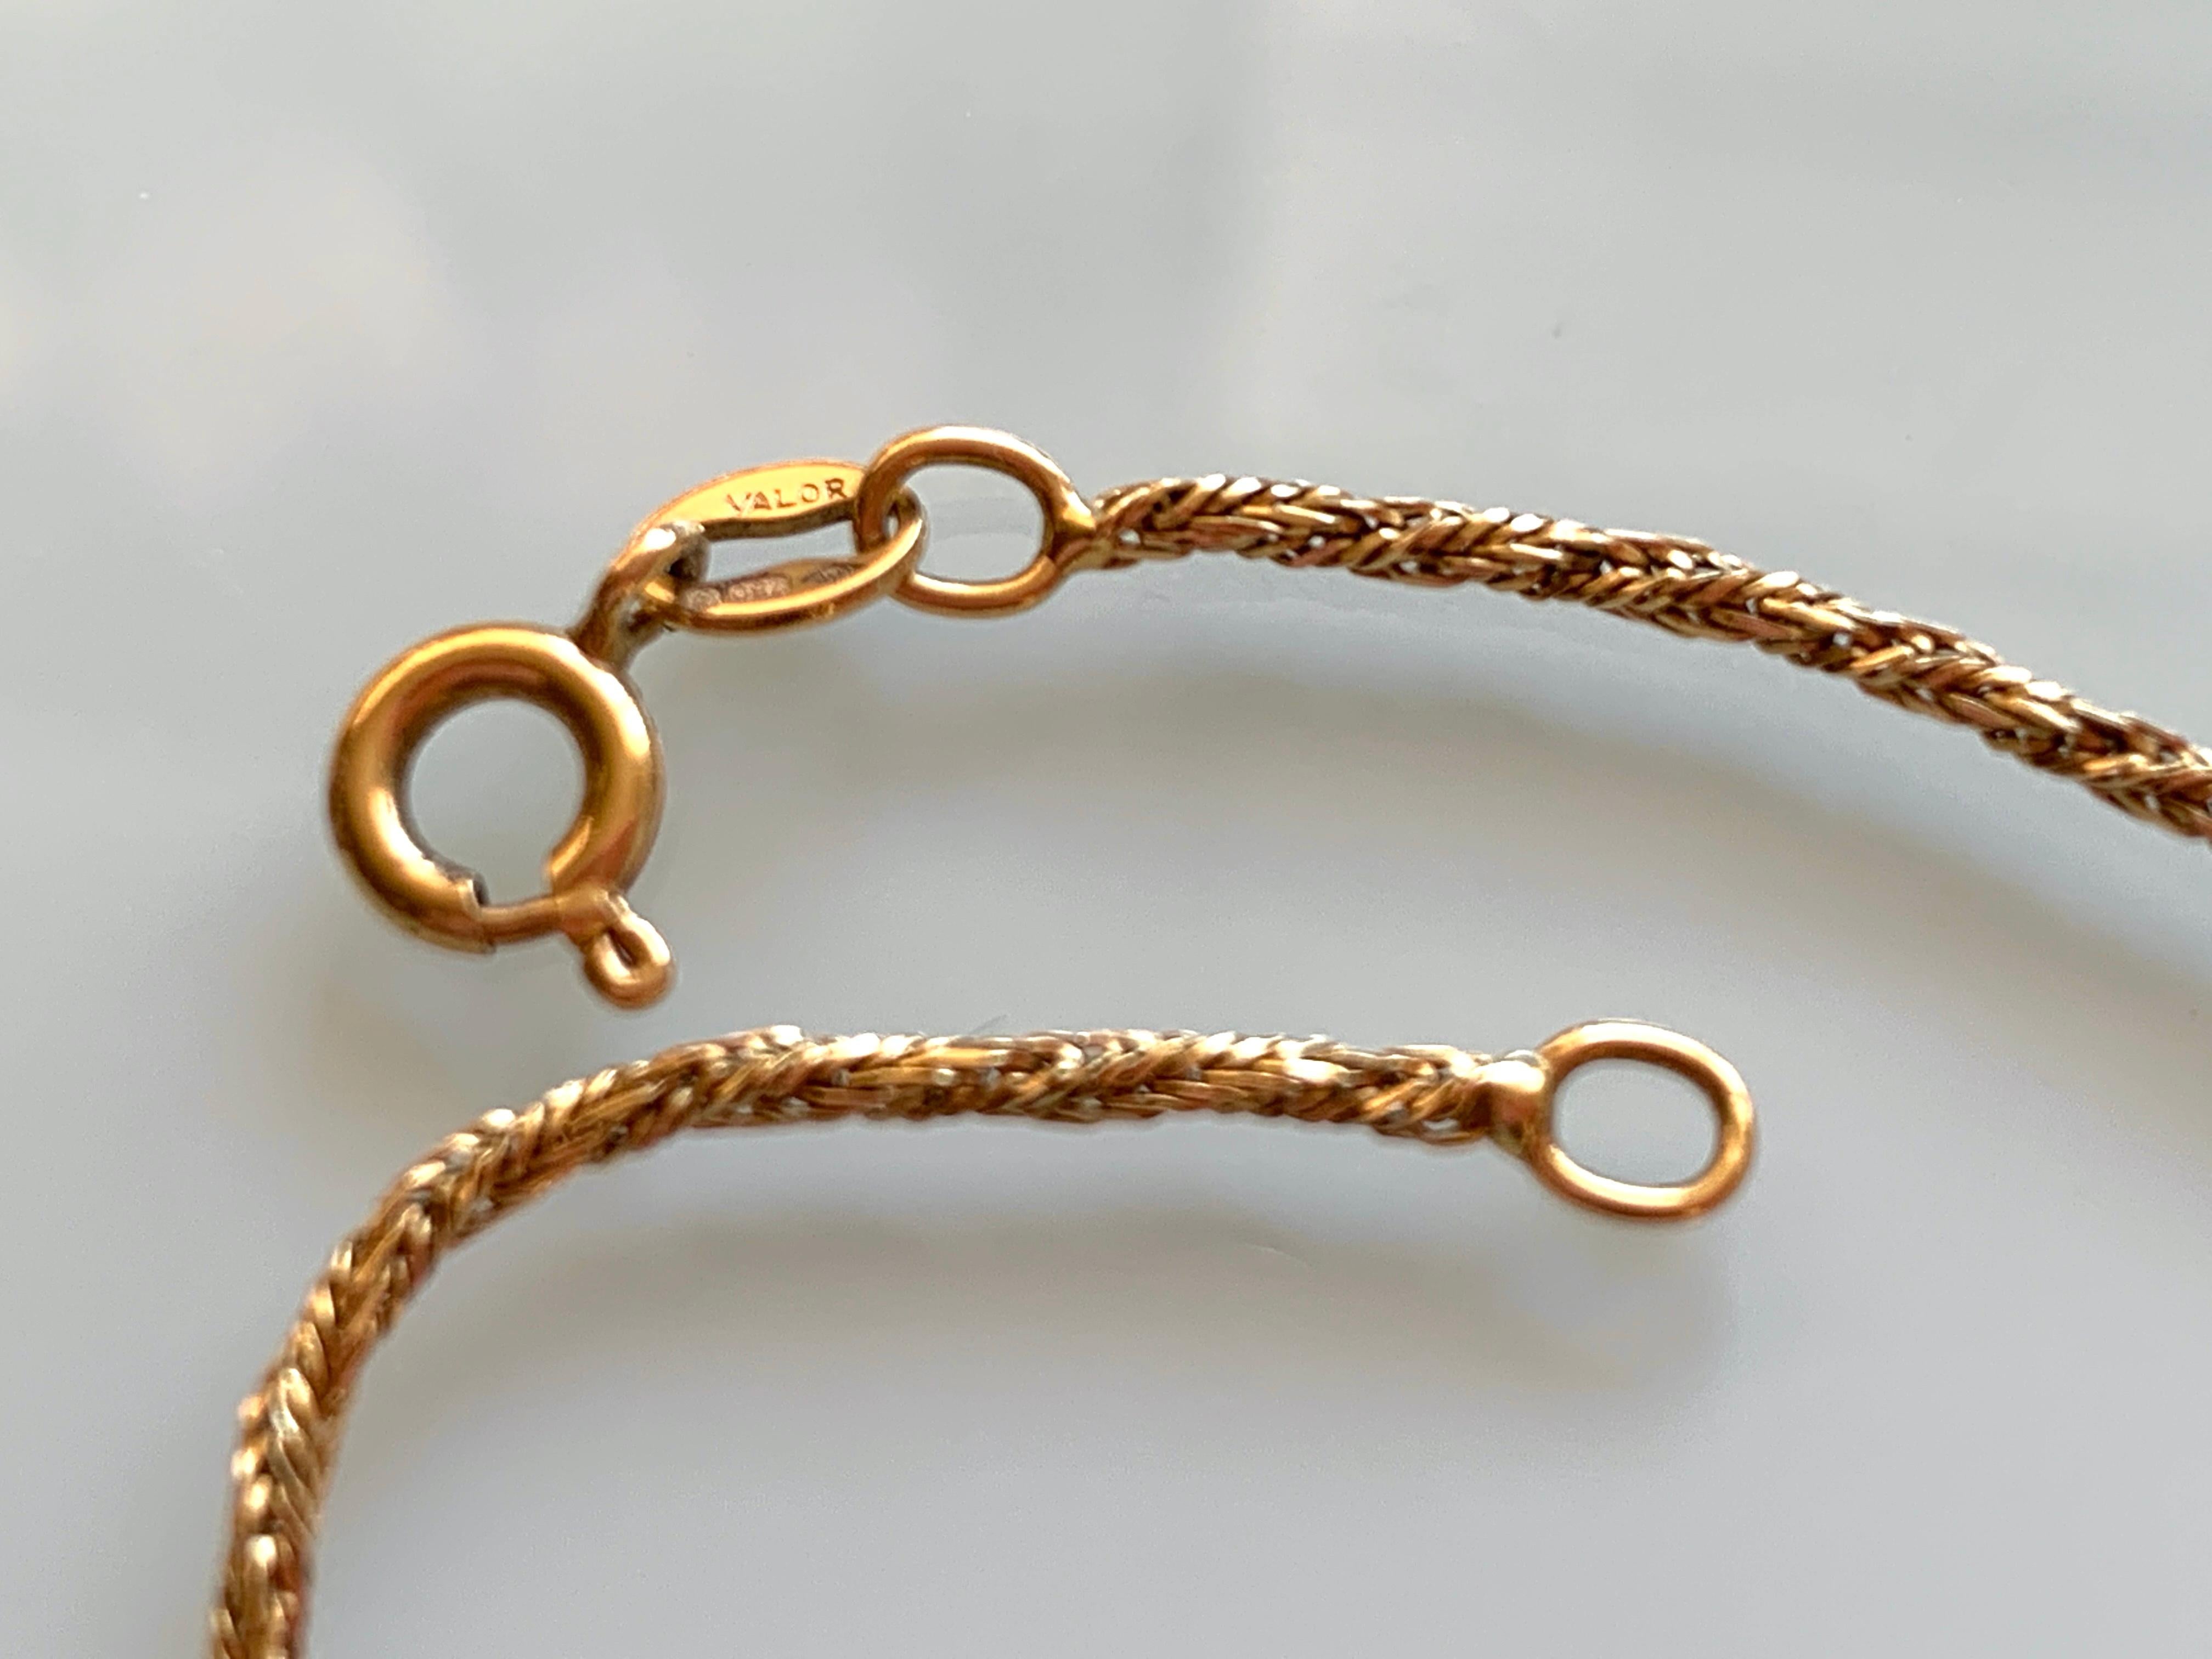 750 gold bracelet meaning